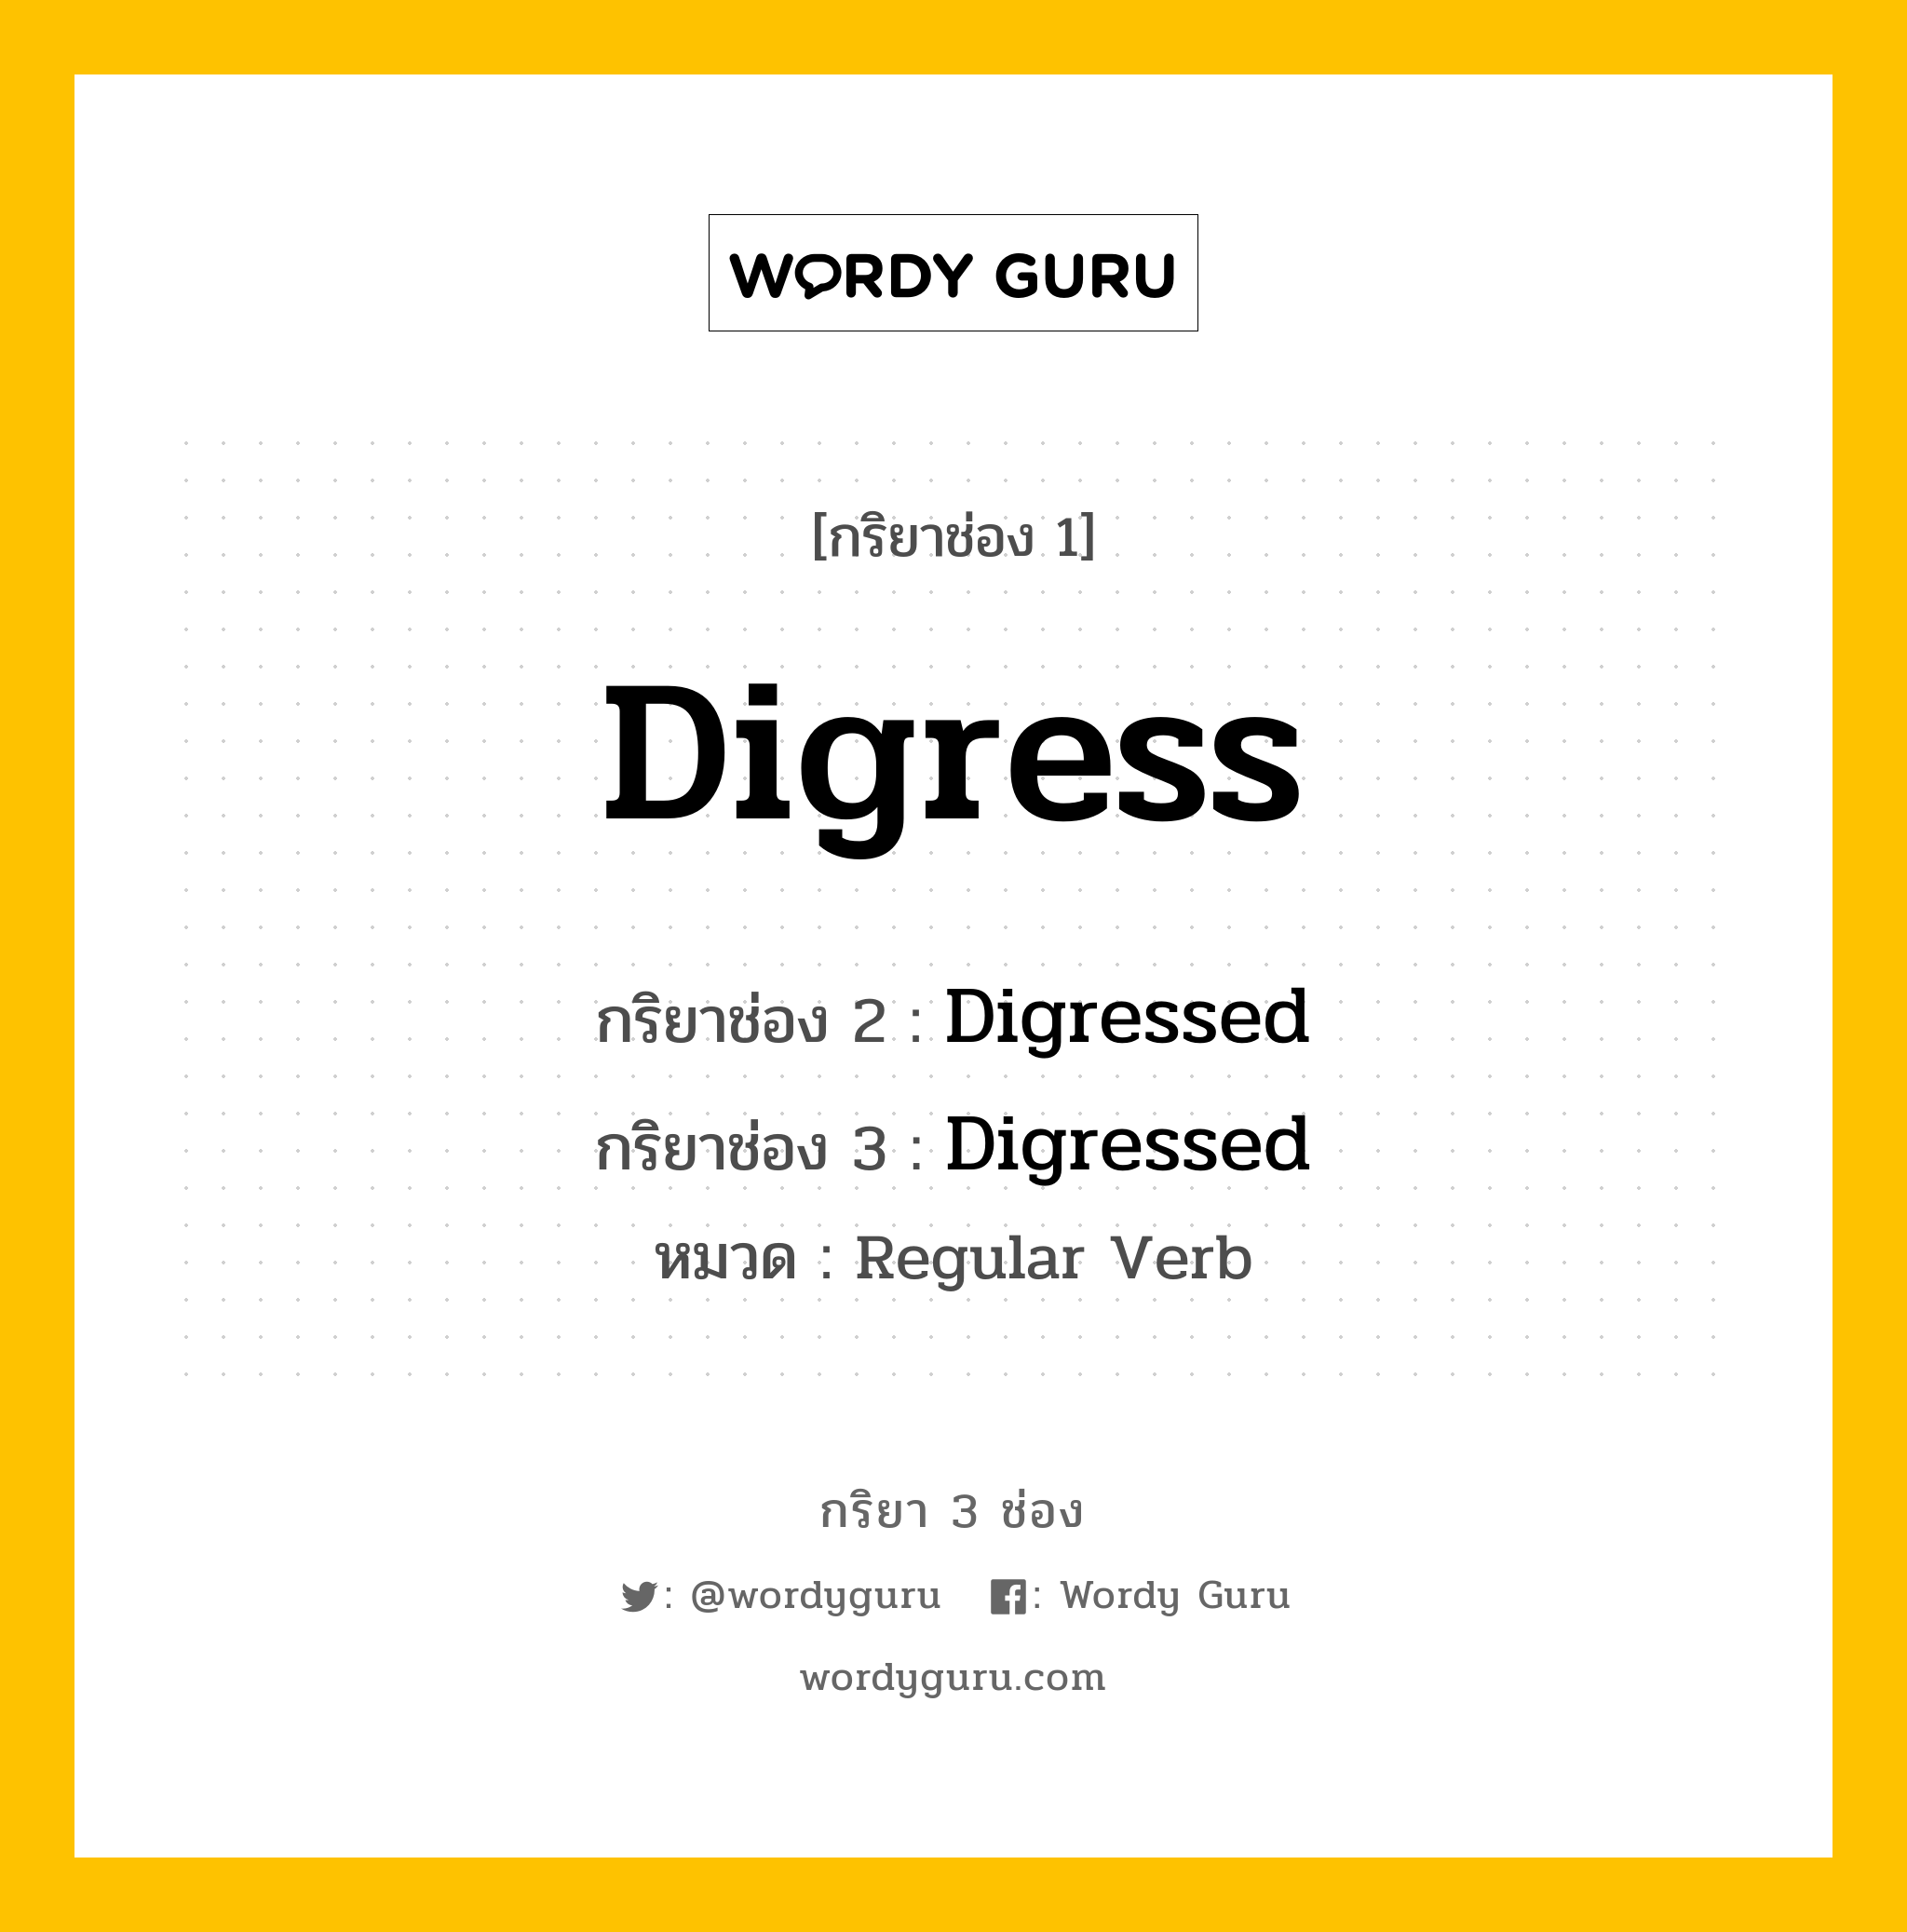 กริยา 3 ช่อง: Digress ช่อง 2 Digress ช่อง 3 คืออะไร, กริยาช่อง 1 Digress กริยาช่อง 2 Digressed กริยาช่อง 3 Digressed หมวด Regular Verb หมวด Regular Verb